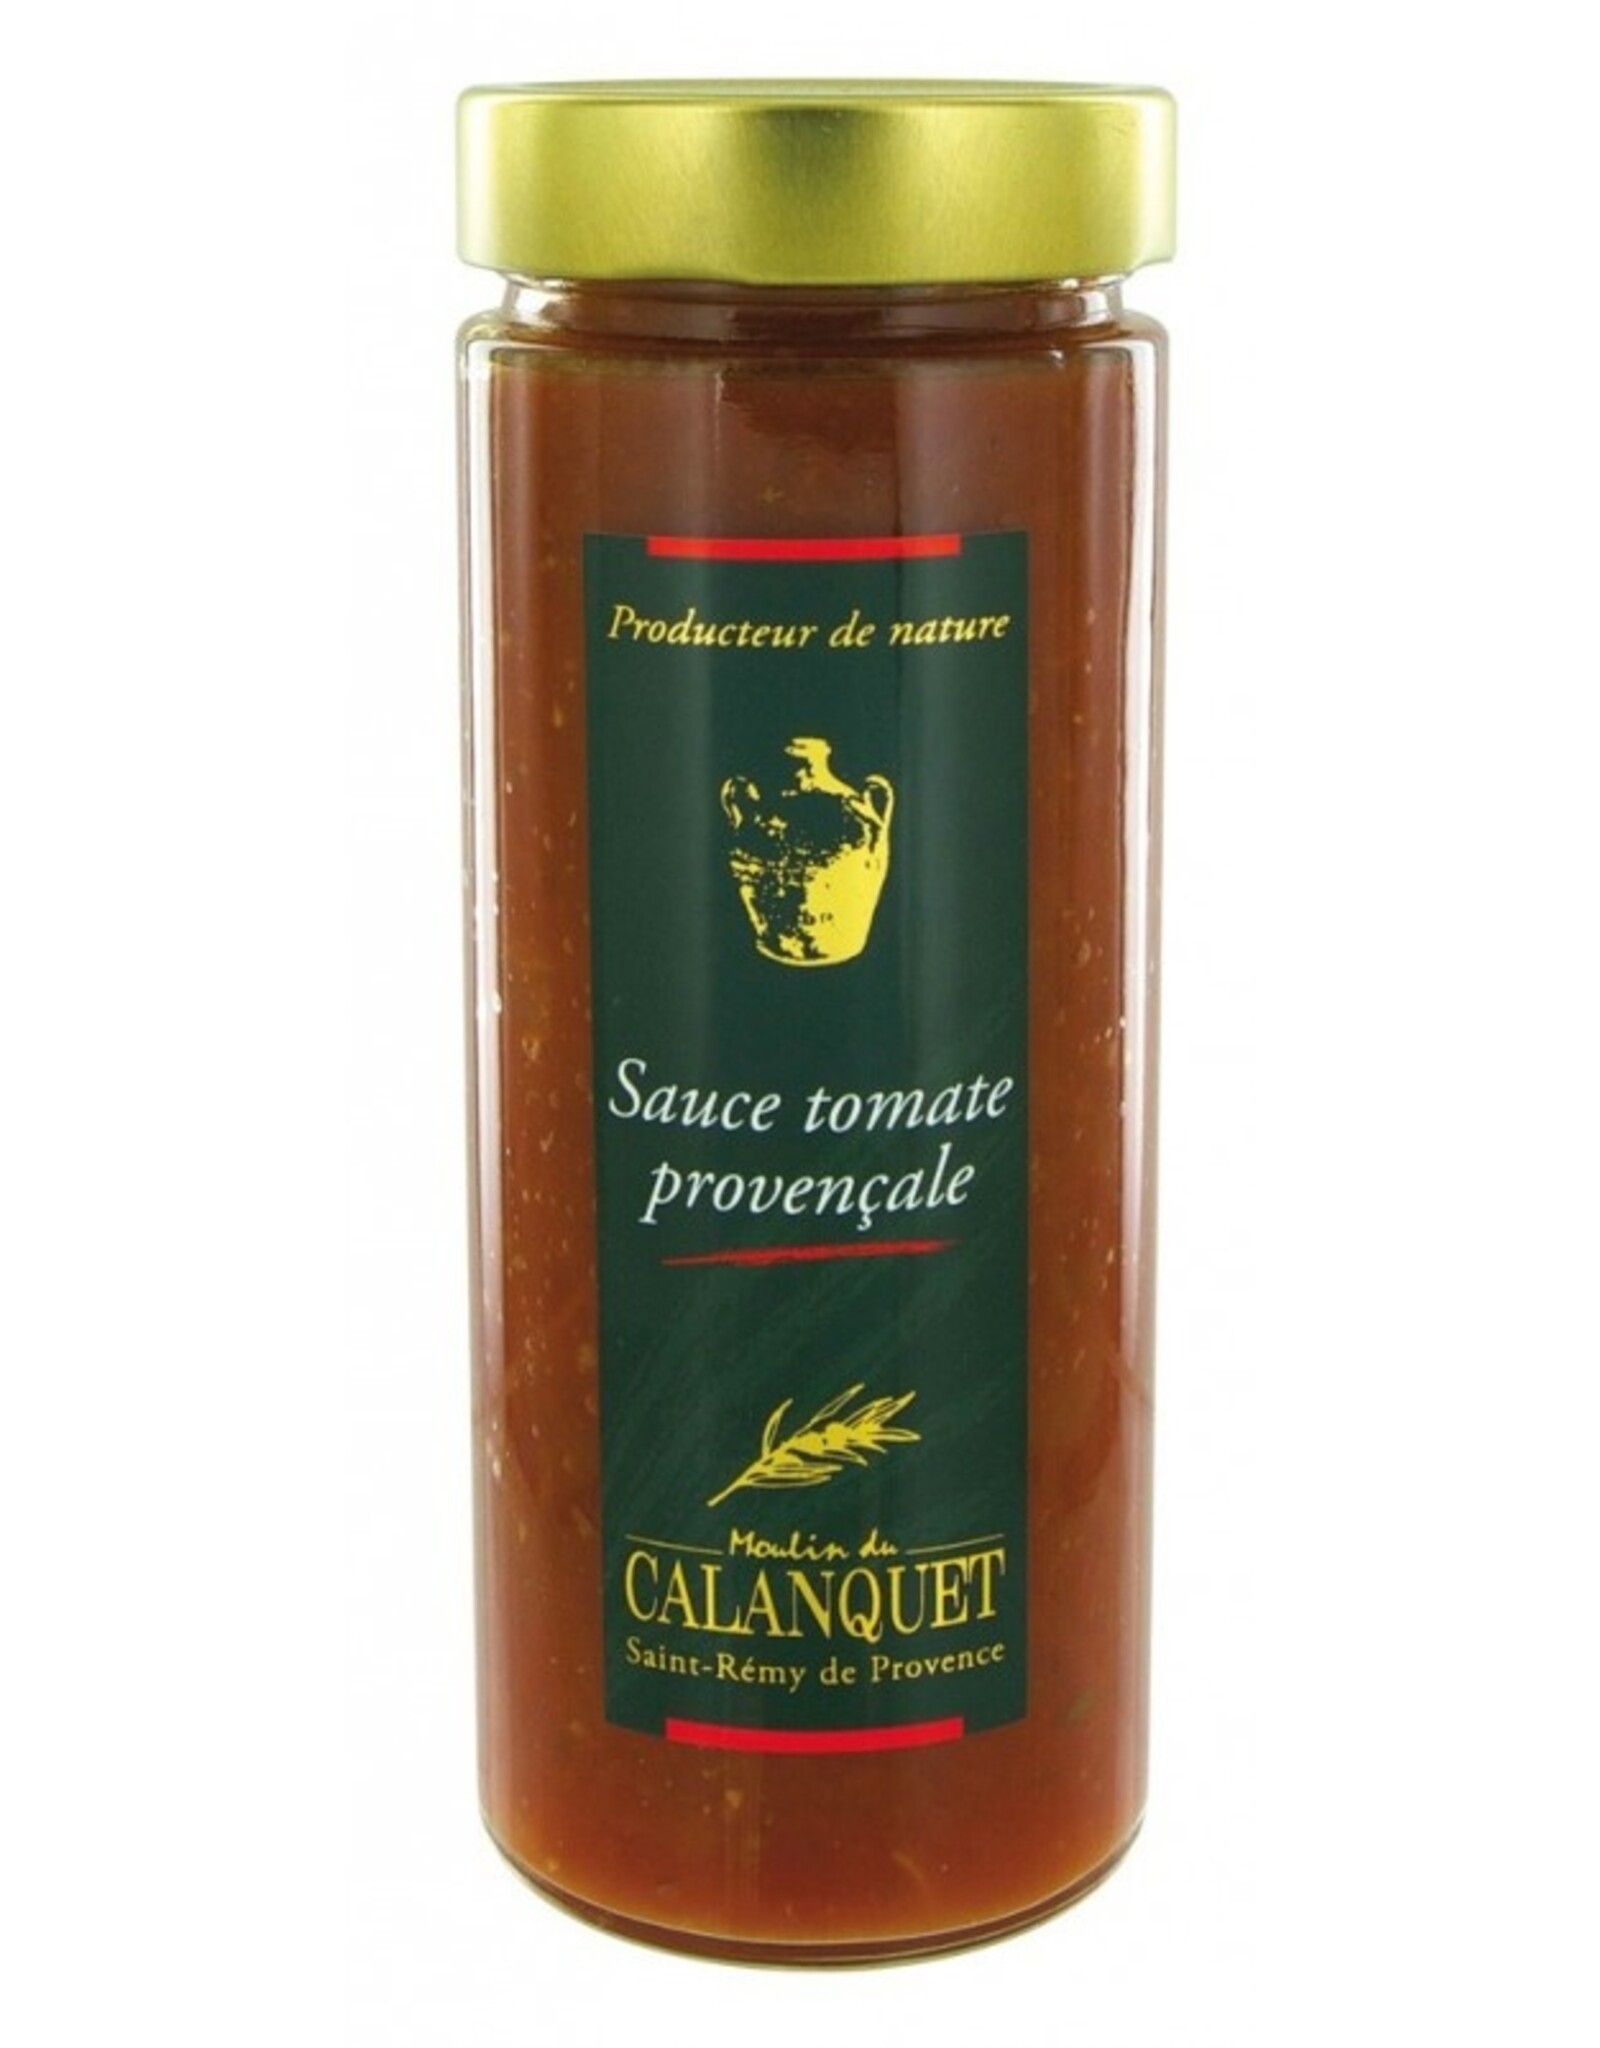 Moulin du Calanquet Sauce tomate provençale 580 g